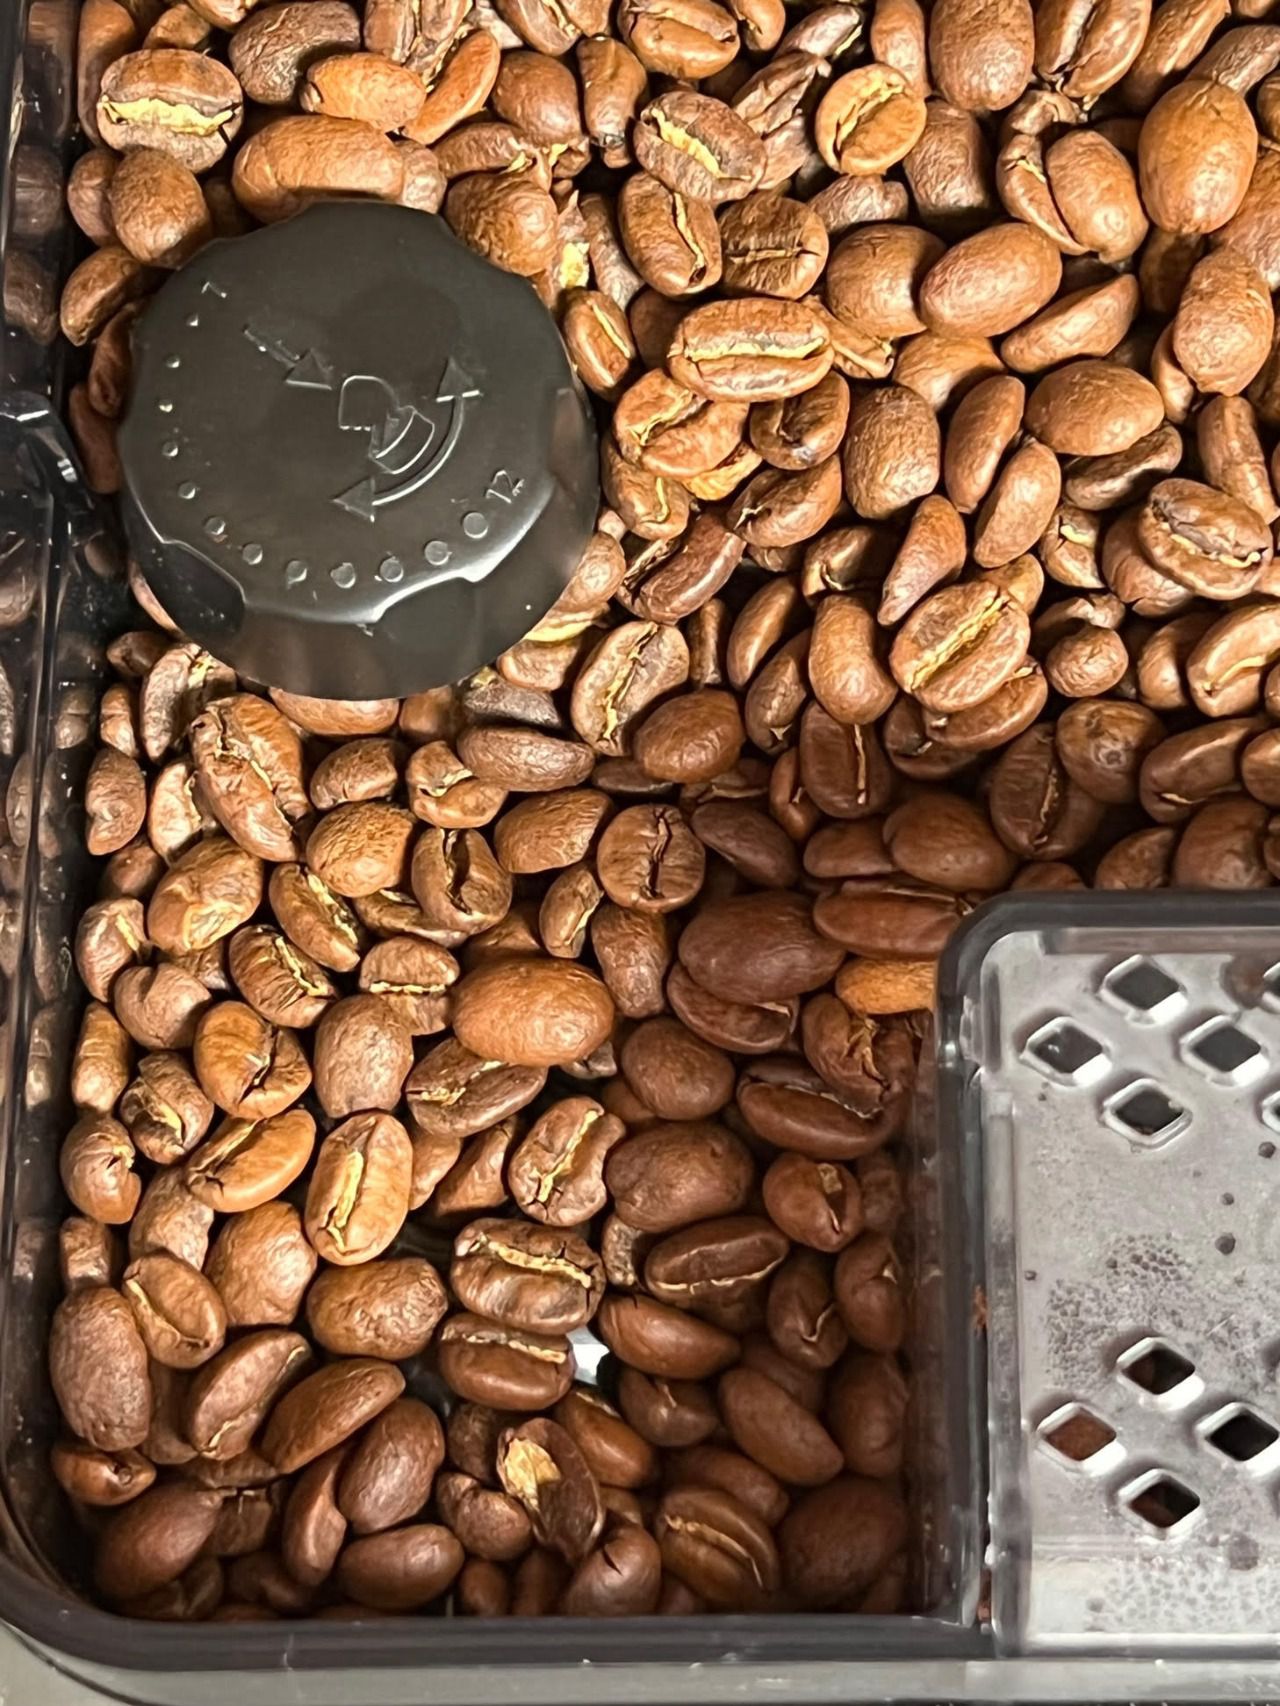 El molinillo cerámico preserva el aroma del café mejor que los metálicos al someterlo a menos calor. Se pueden seleccionar 12 niveles de molido.